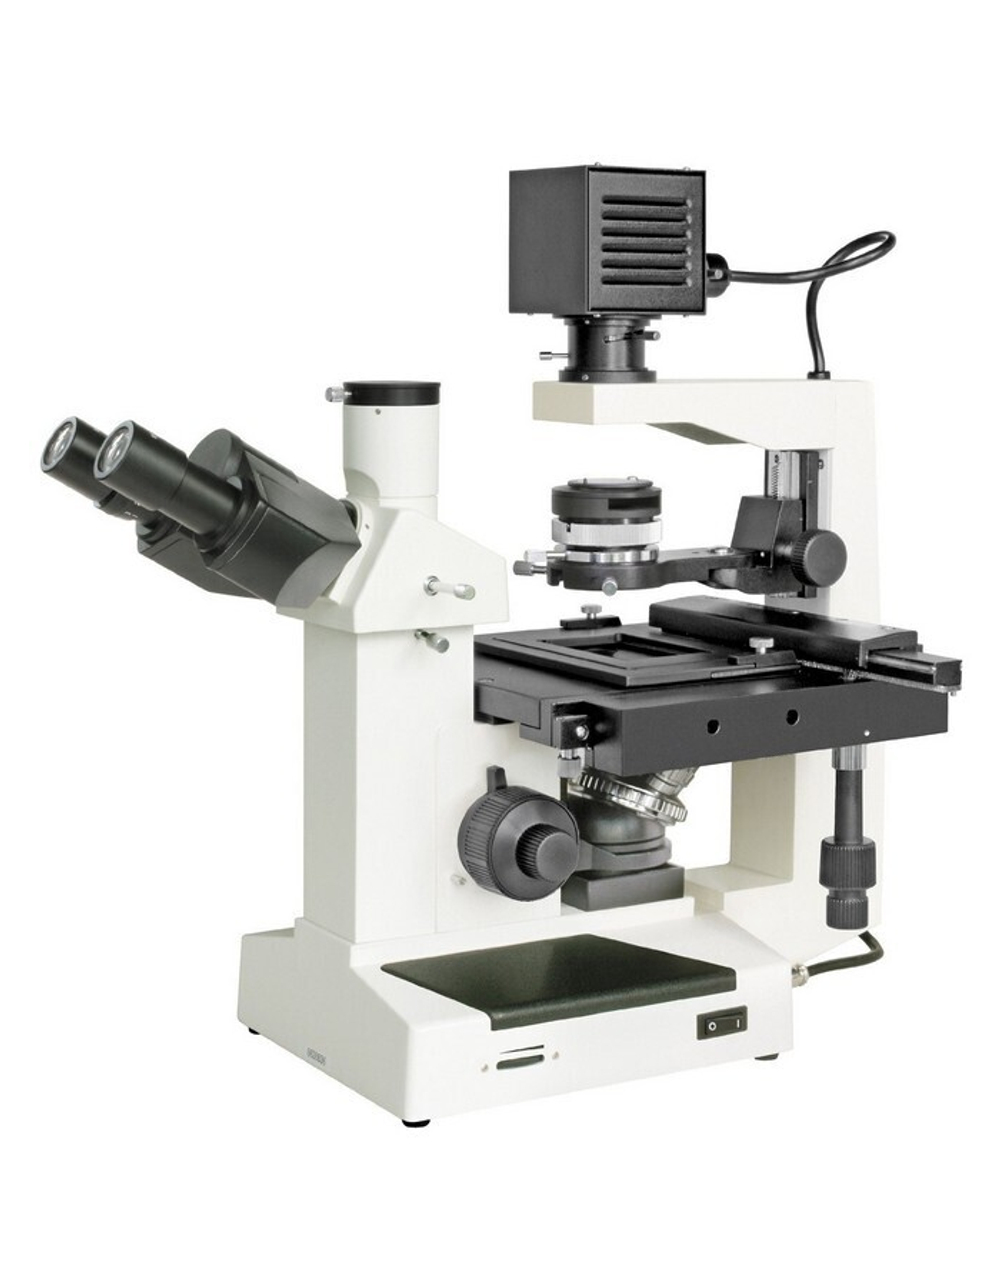 Микроскоп Bresser Science IVM-401